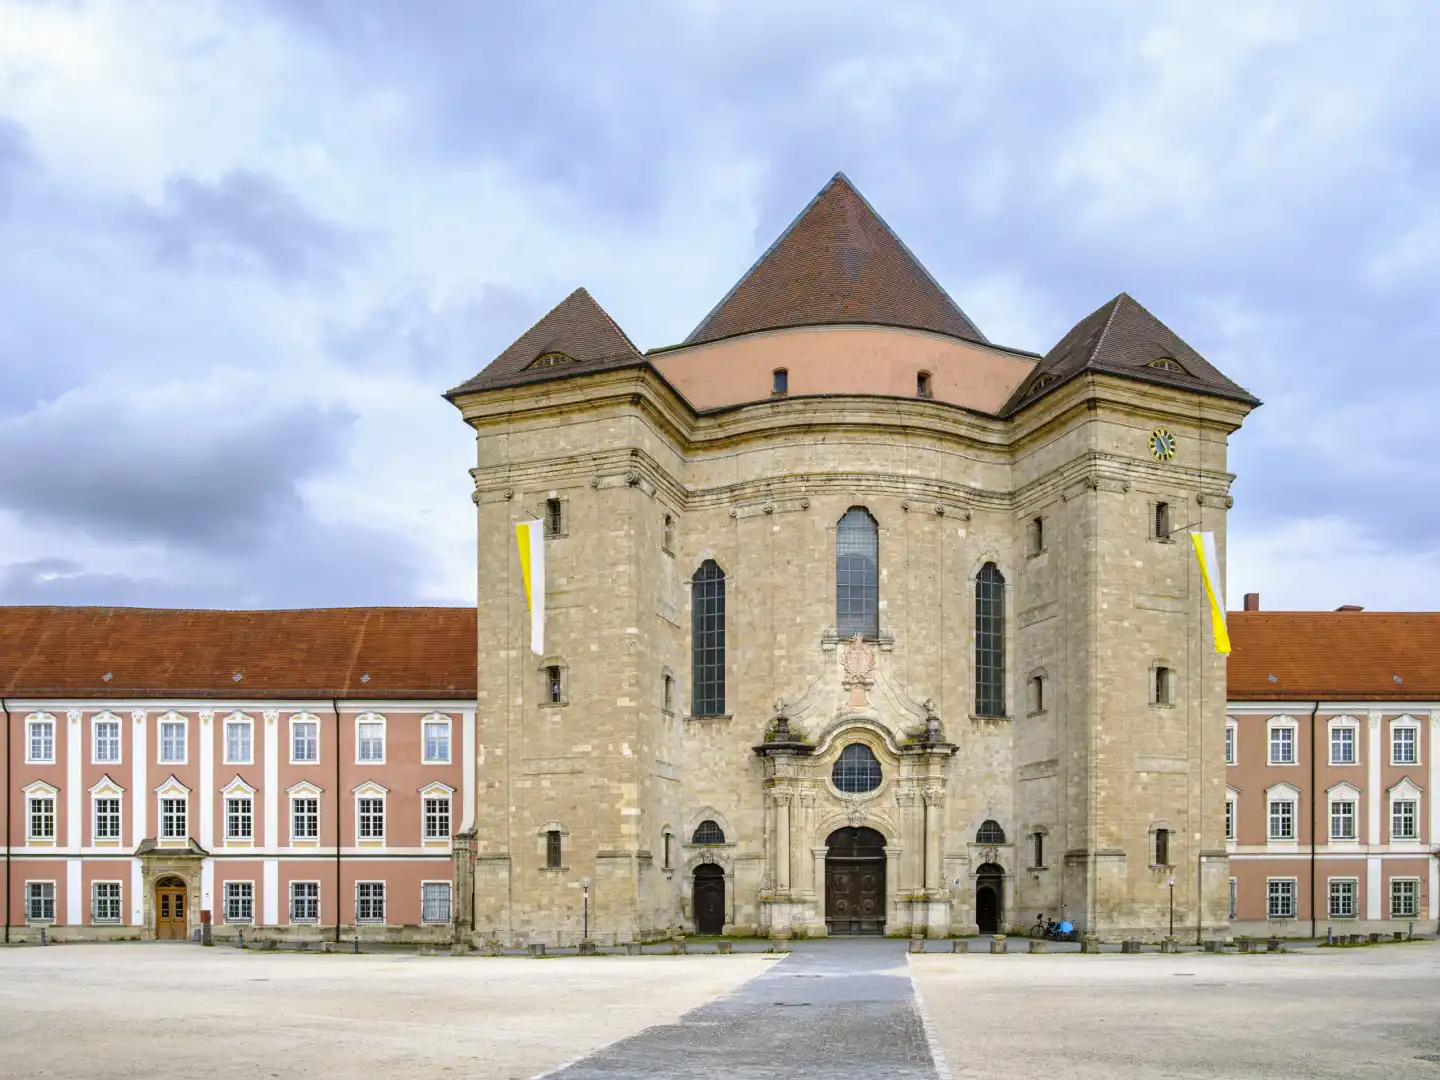 Basilika S. Martin, Klosterkirche der ehemaligen Benediktinerabtei des Klosters Wiblingen, Ulm, Baden-Württemberg, Deutschland.